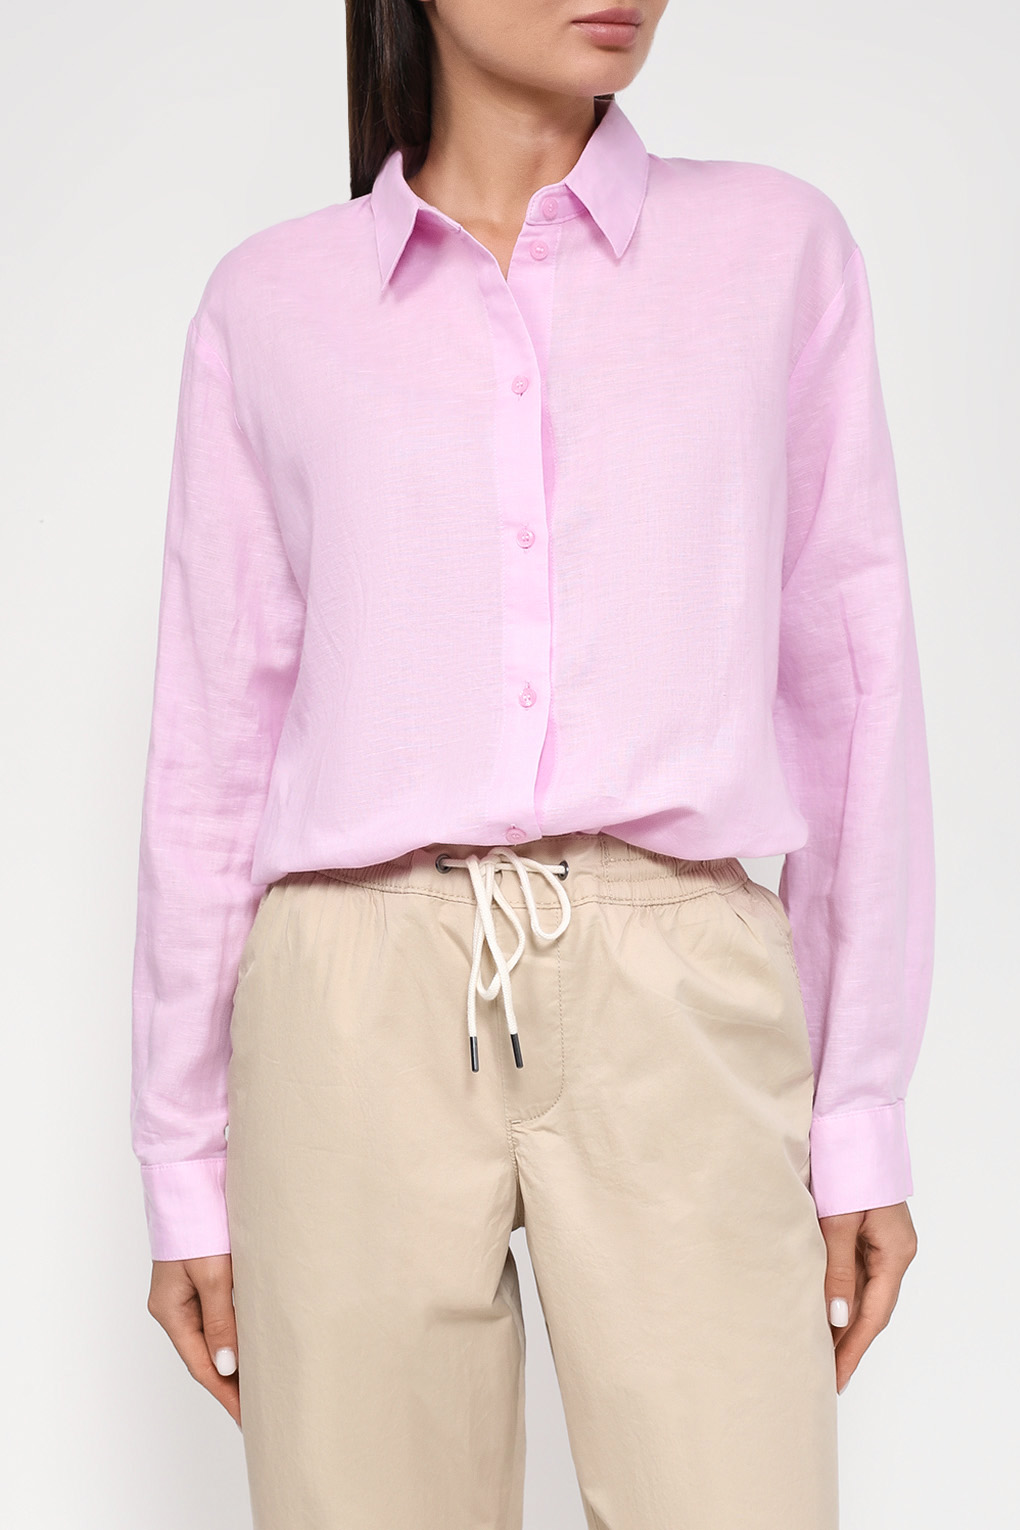 Рубашка женская Esprit Casual 993EE1F301 розовая L